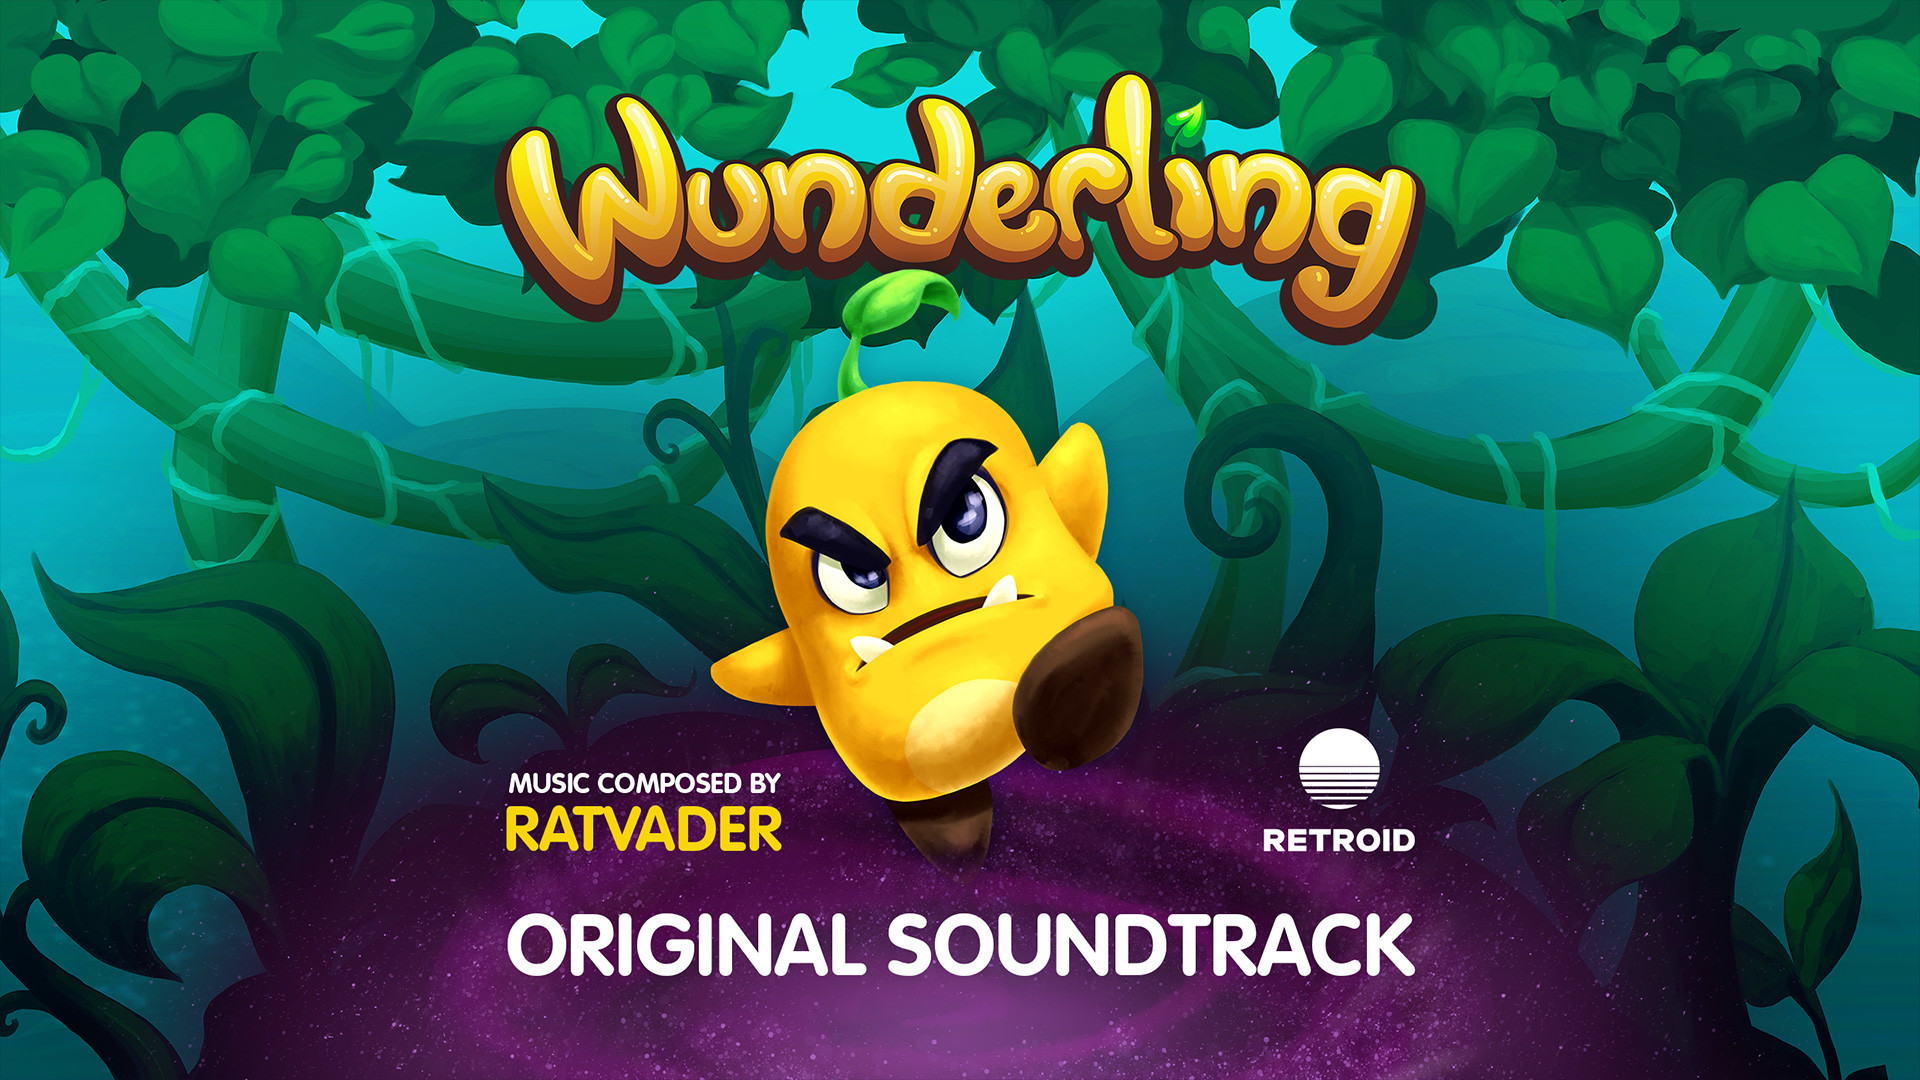 Wunderling - Soundtrack Featured Screenshot #1